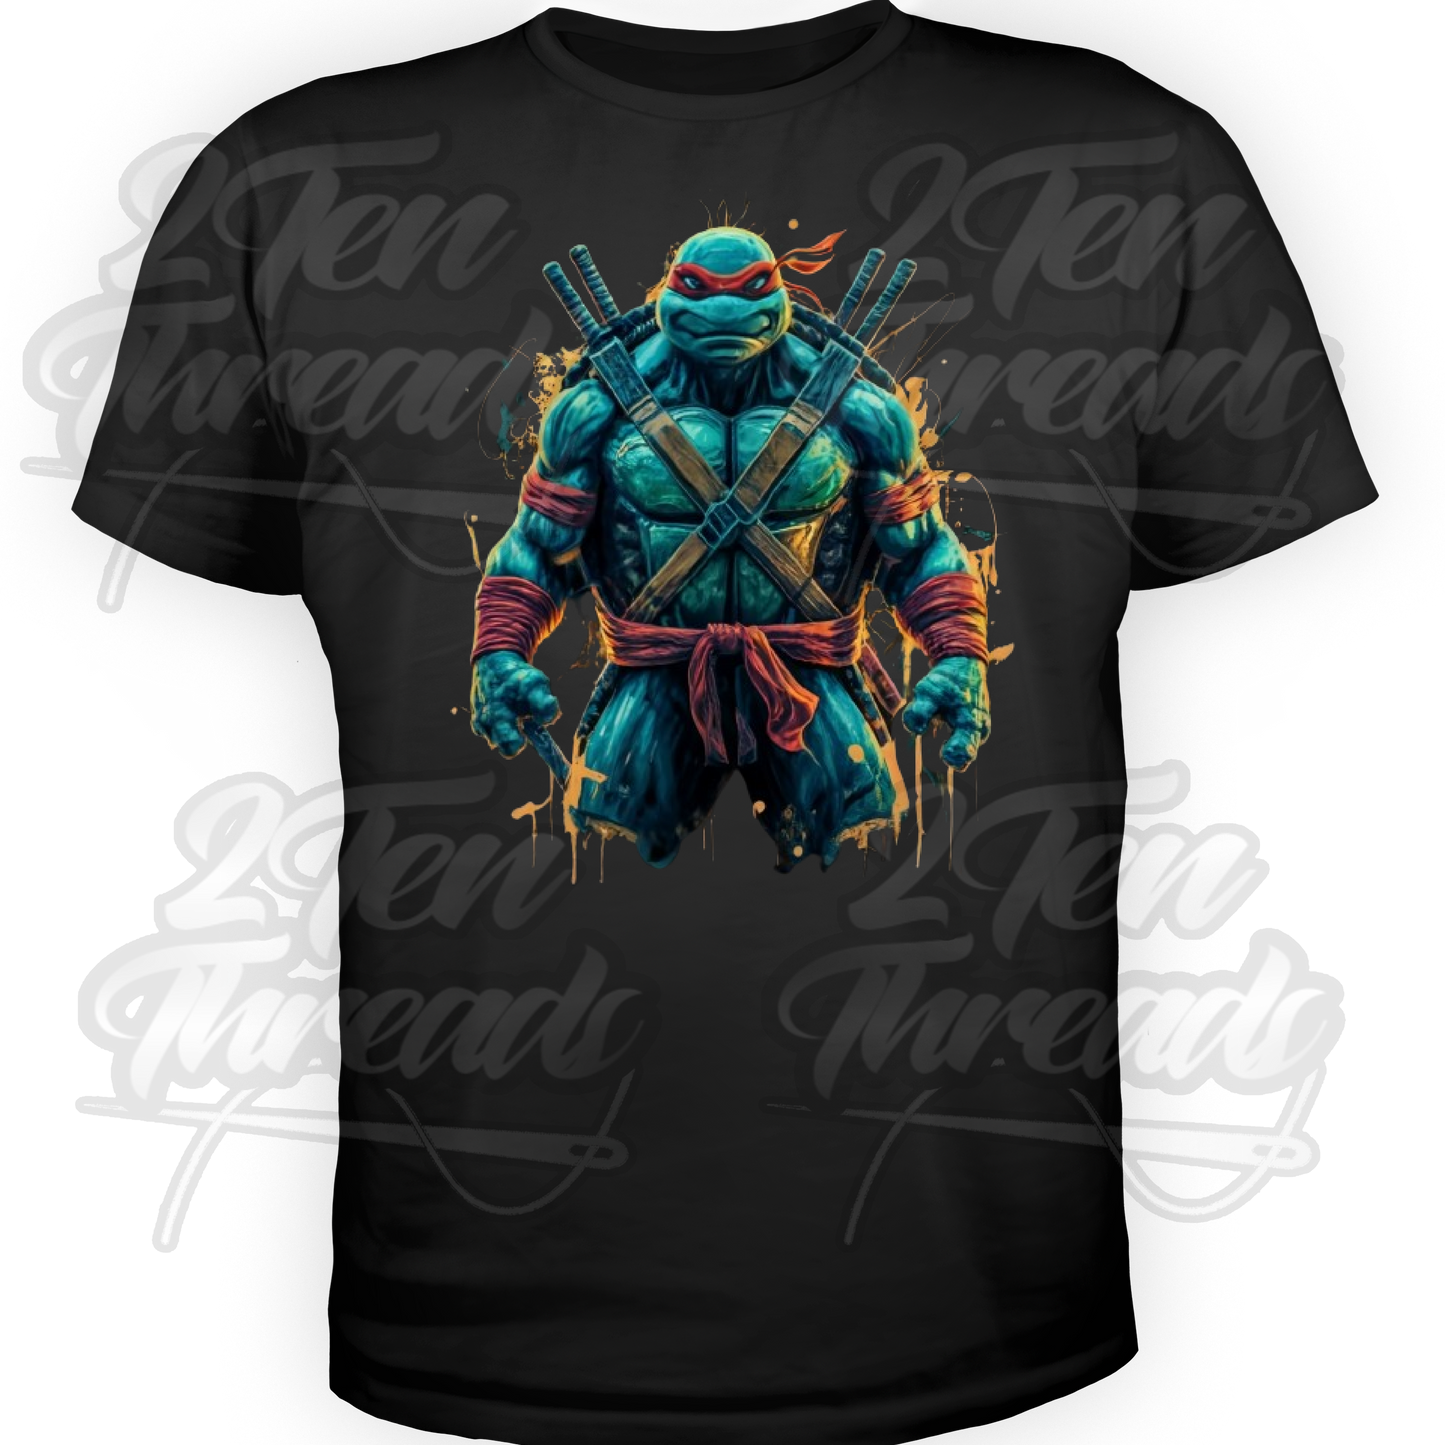 Raph - Ninja Turtles Shirt